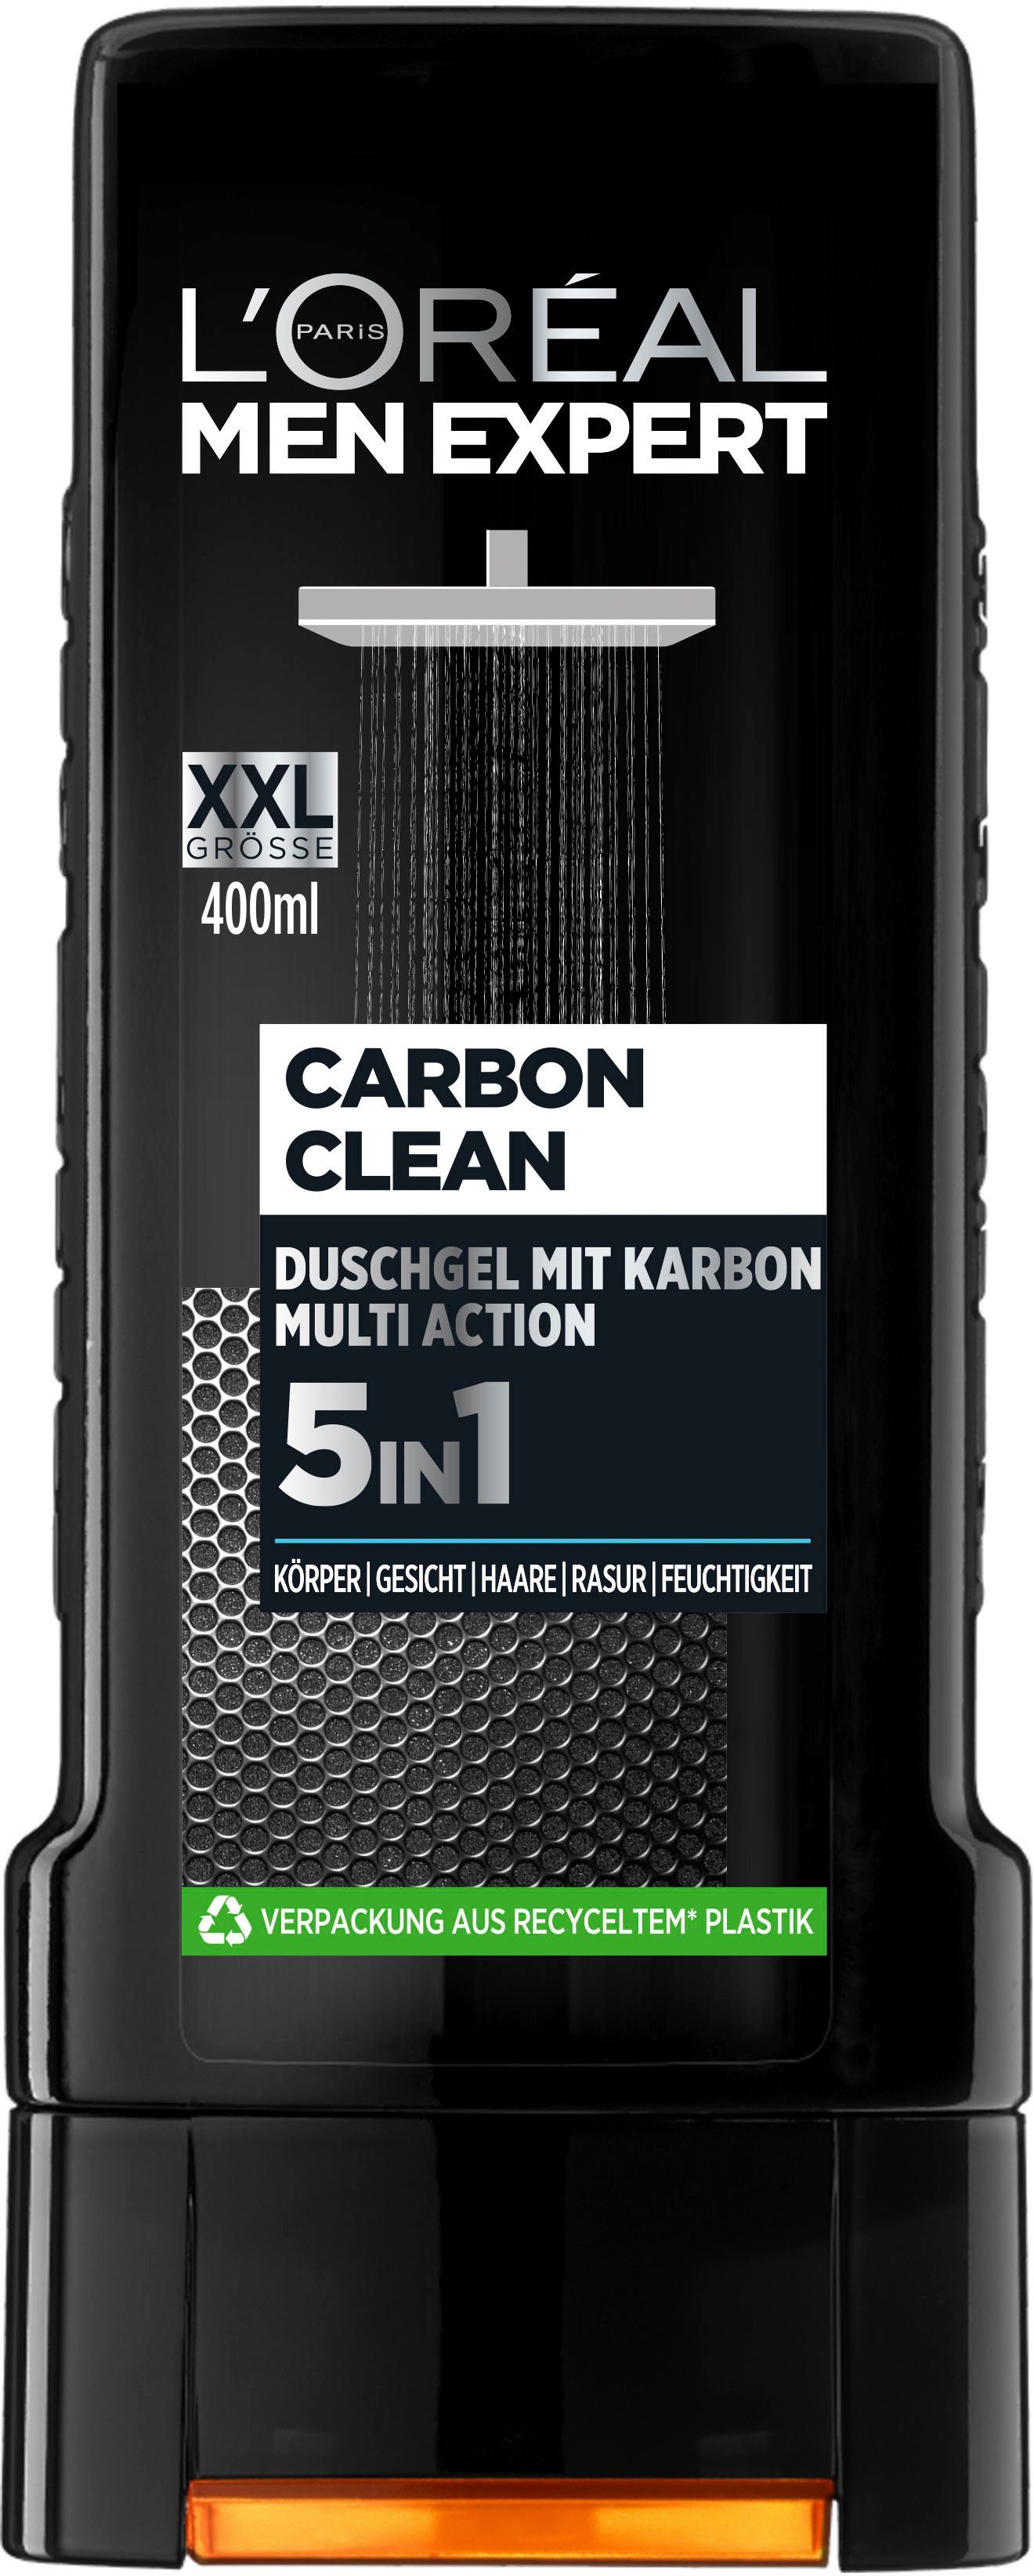 L'ORÉAL PARIS EXPERT Clean XXL MEN Duschgel 5in1 Carbon